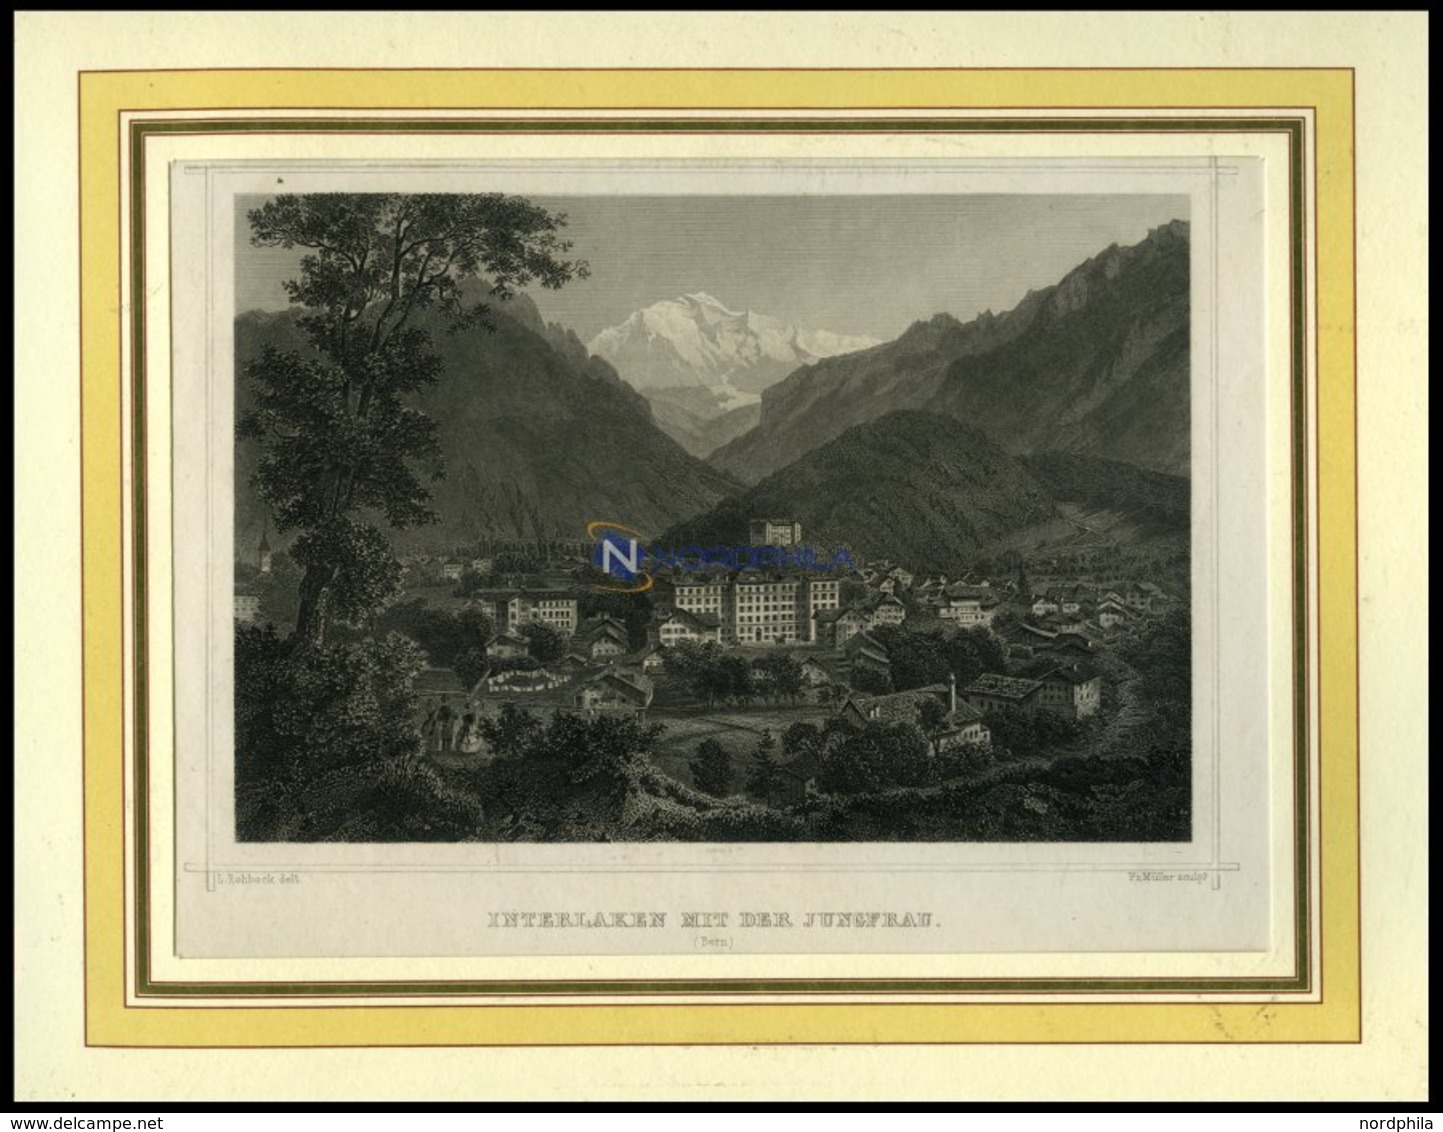 INTERLAKEN, Gesamtansicht Mit Der Jungfrau, Stahlstich Von Rohbock/Müller Um 1840 - Litografía